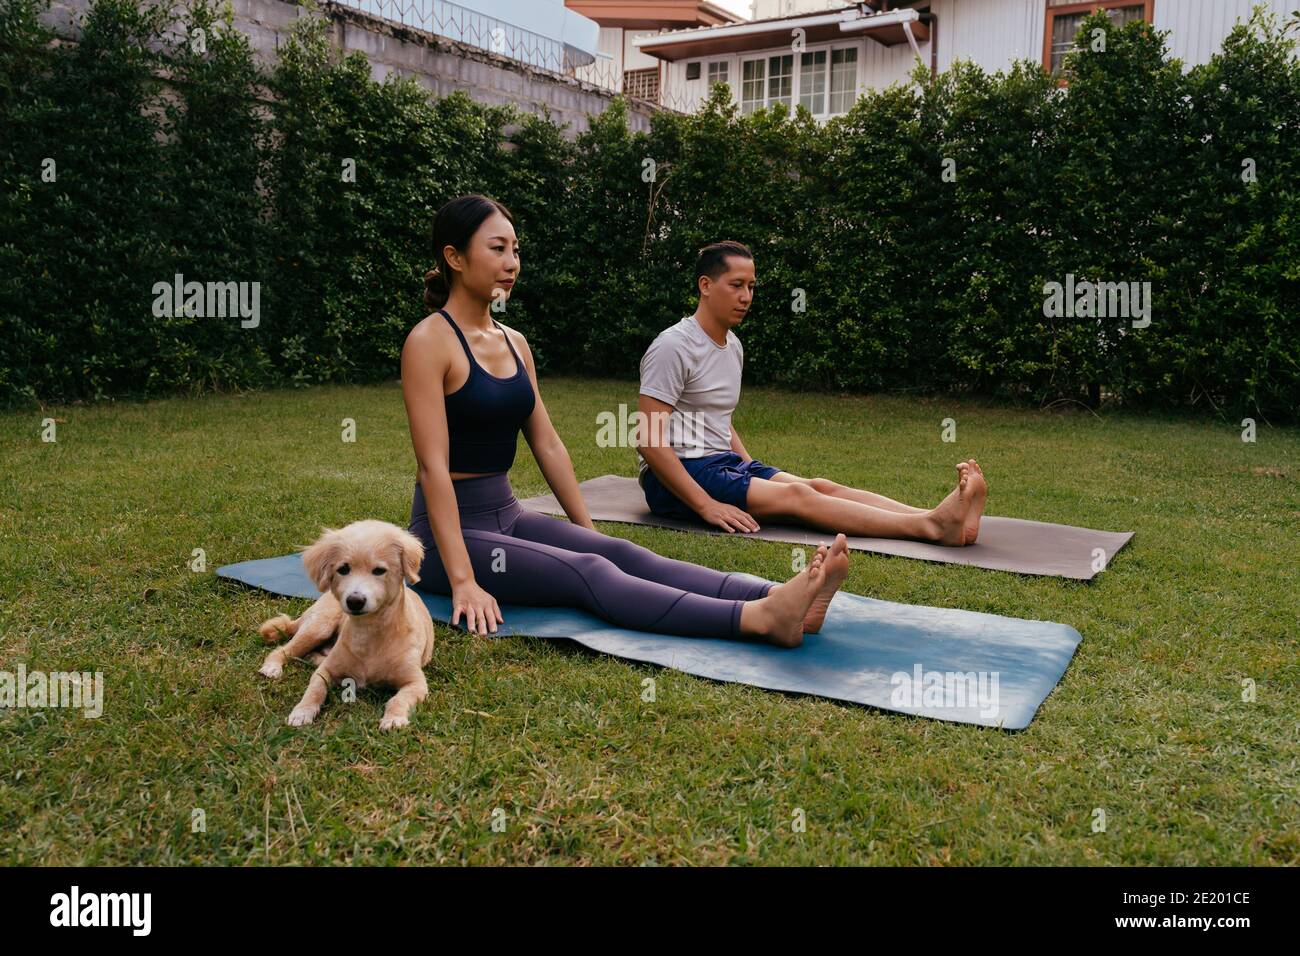 L'uomo e la donna asiatici seduti sui tappetini in posa del personale mentre si pratica yoga in cortile vicino al cane Foto Stock